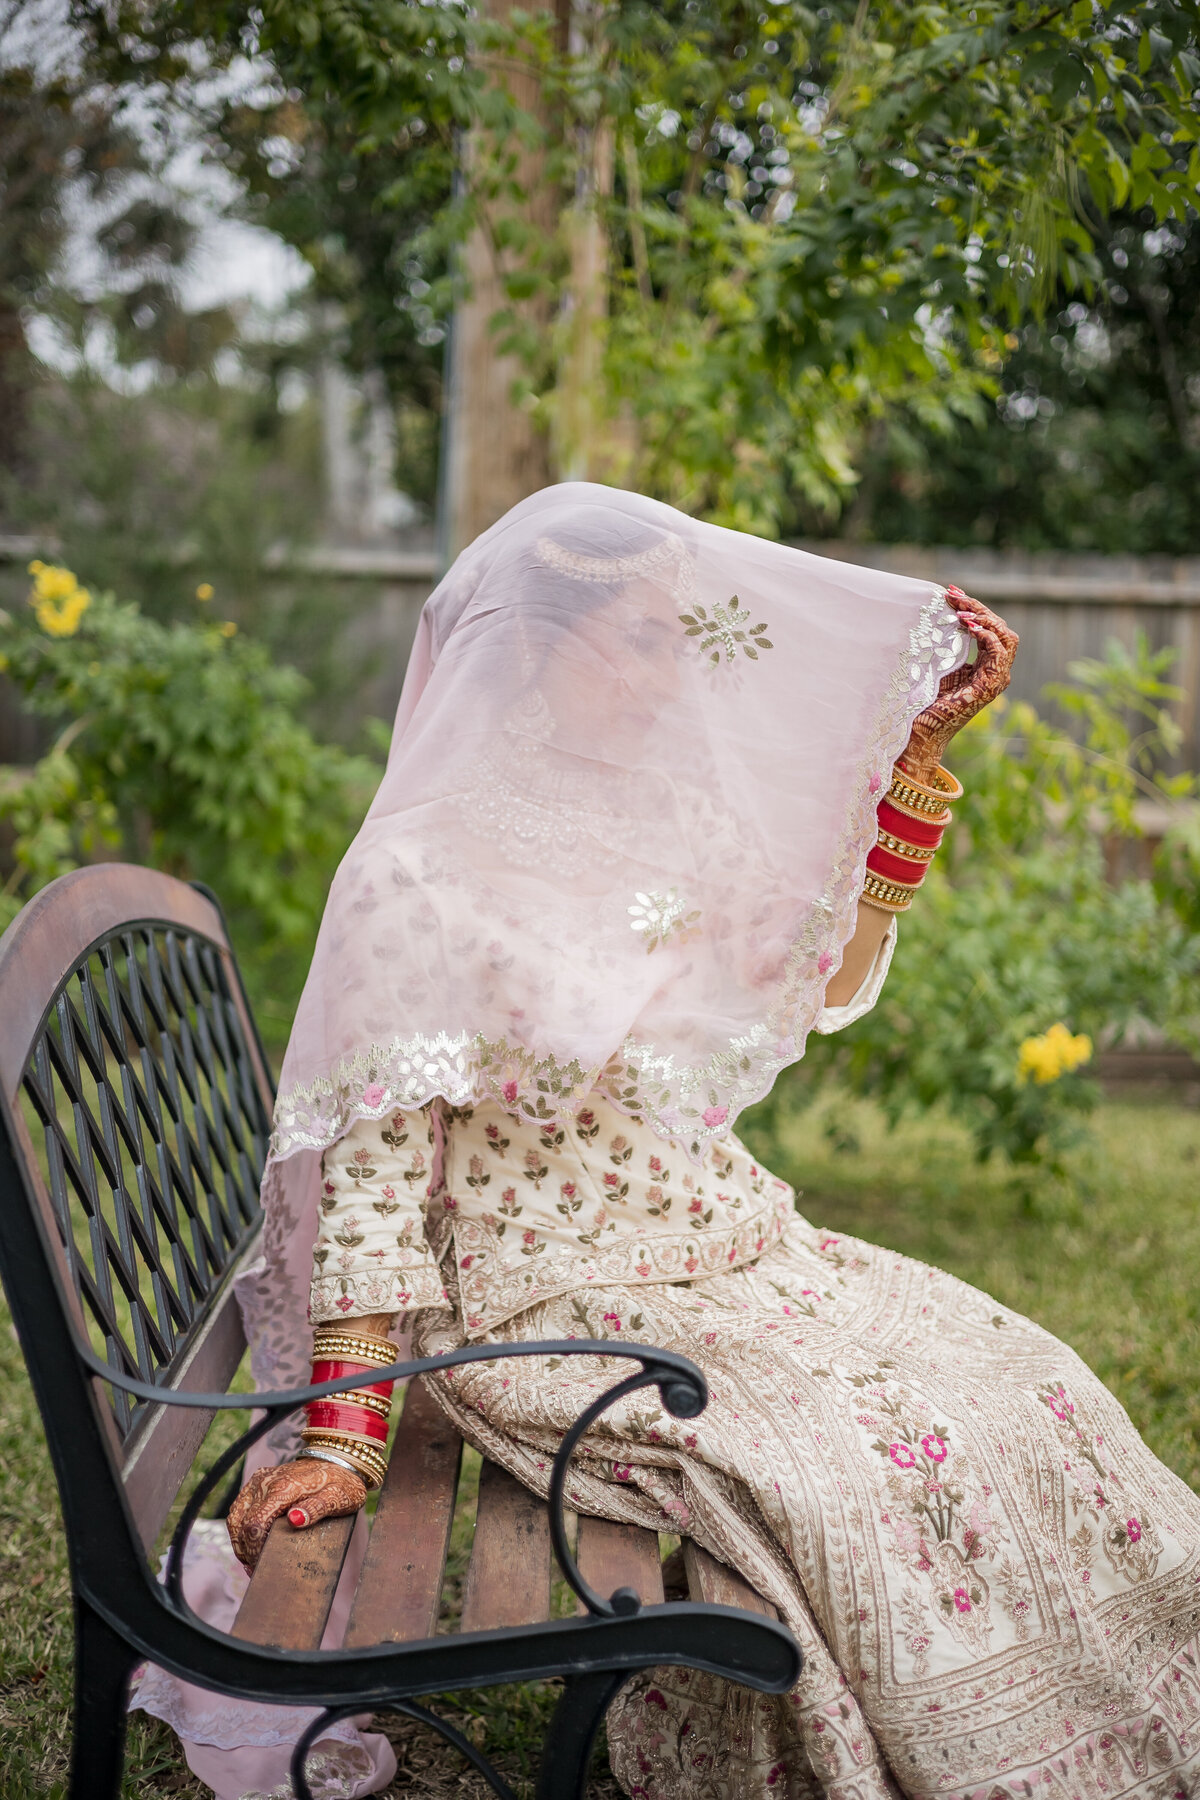 Indian_Wedding_Photographer